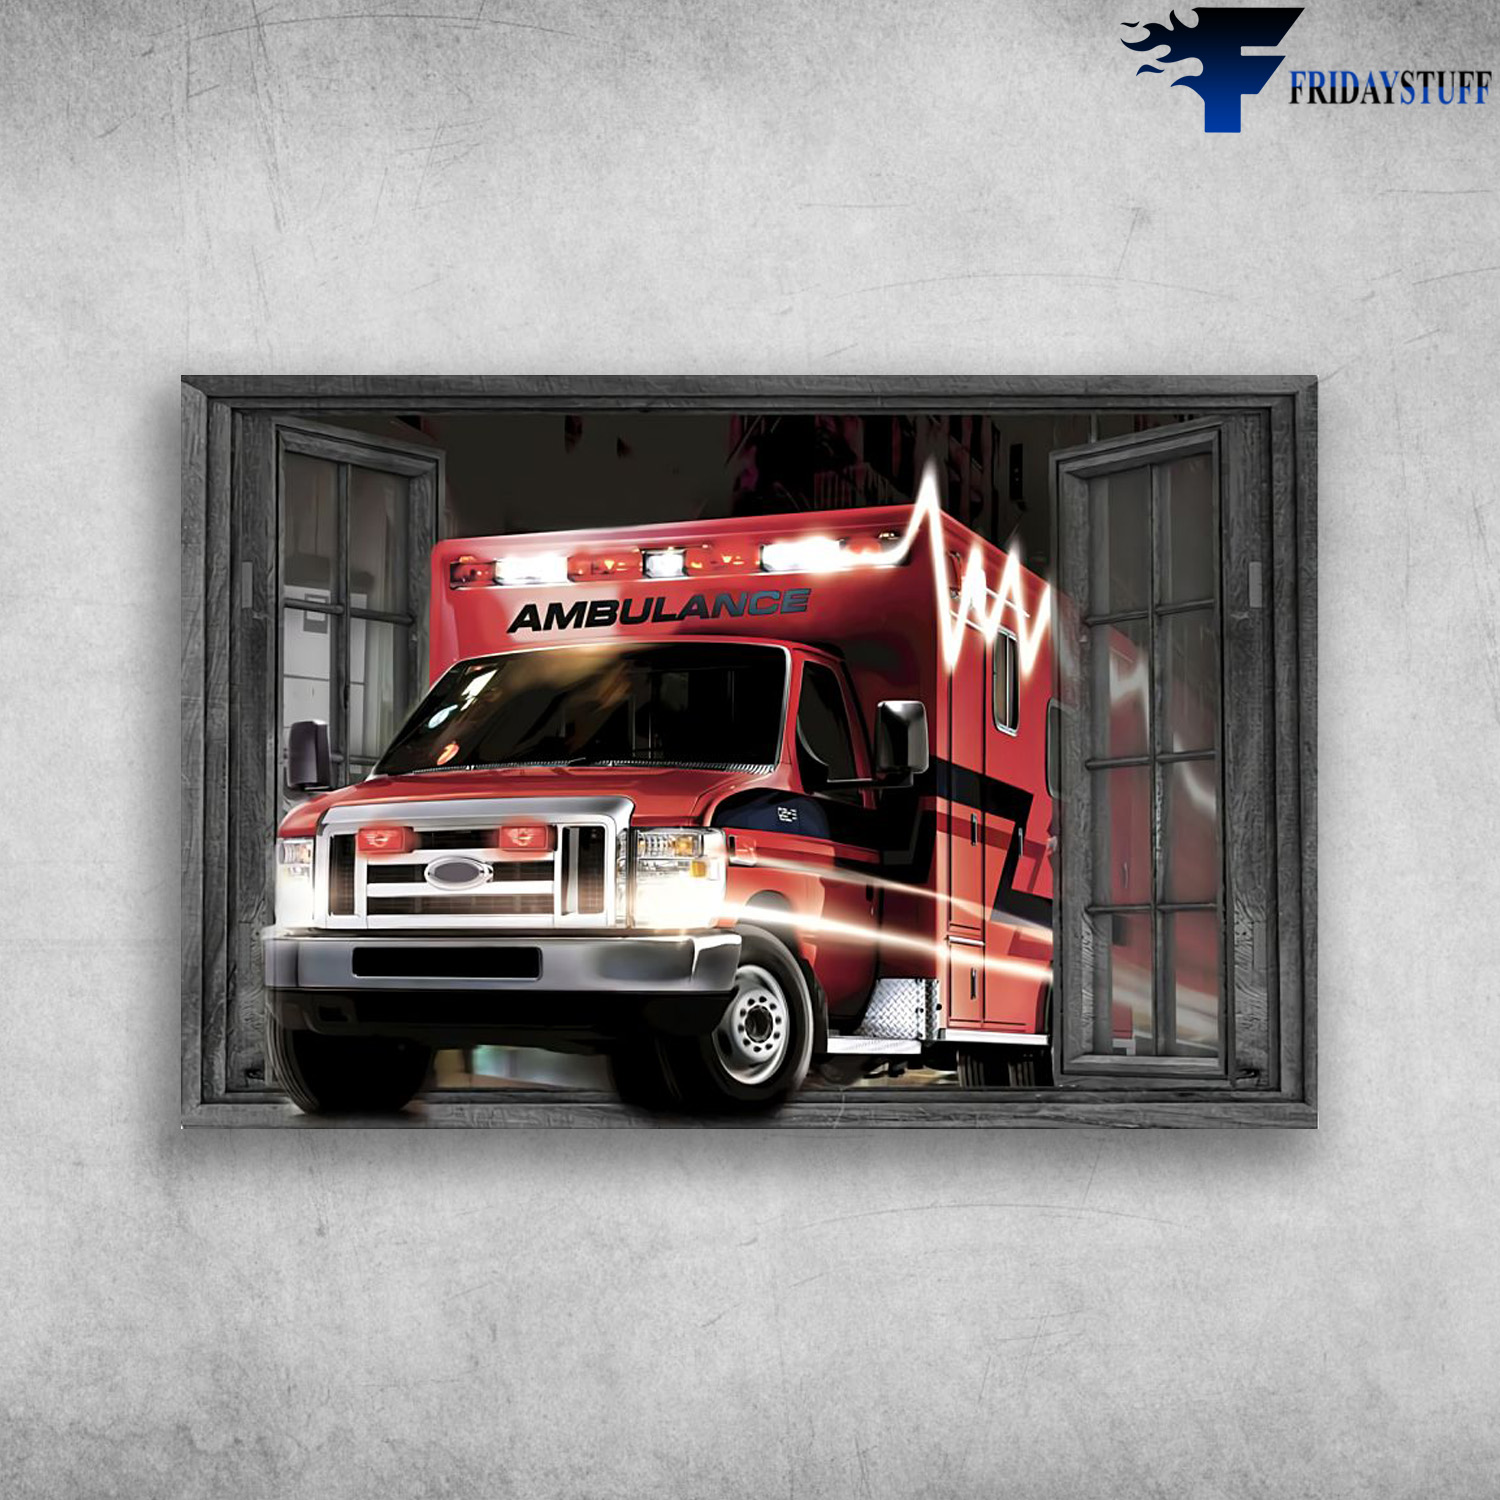 Ambulance paramedic outside the window